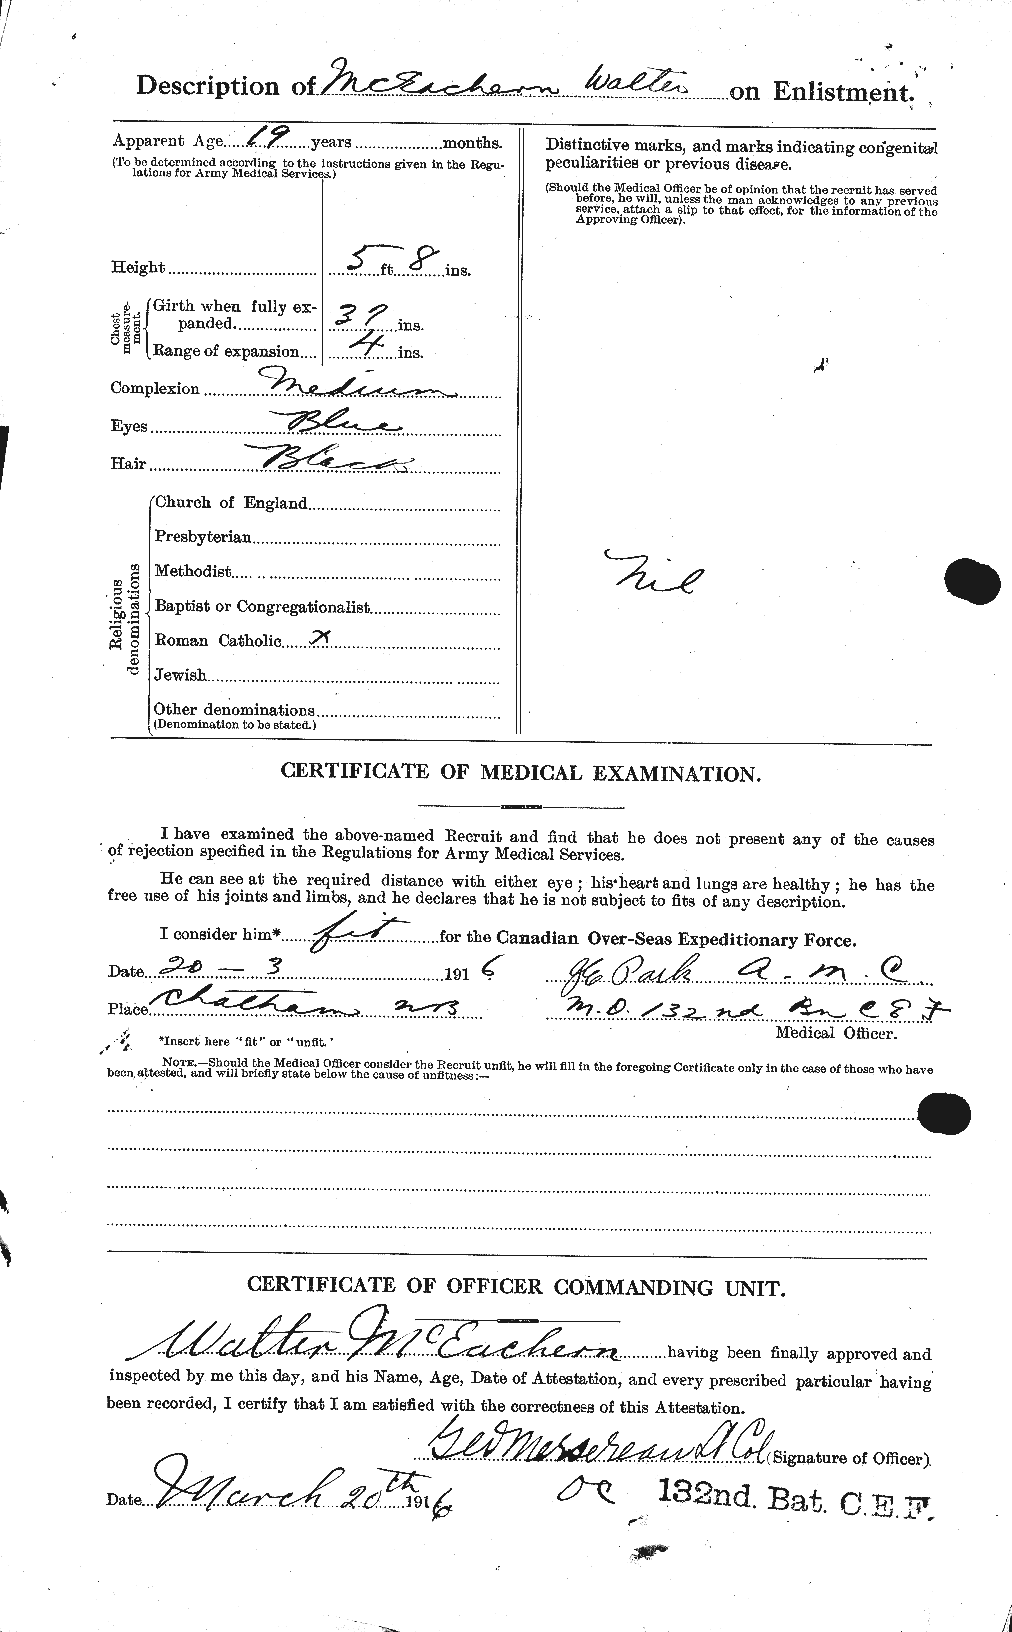 Dossiers du Personnel de la Première Guerre mondiale - CEC 521914b